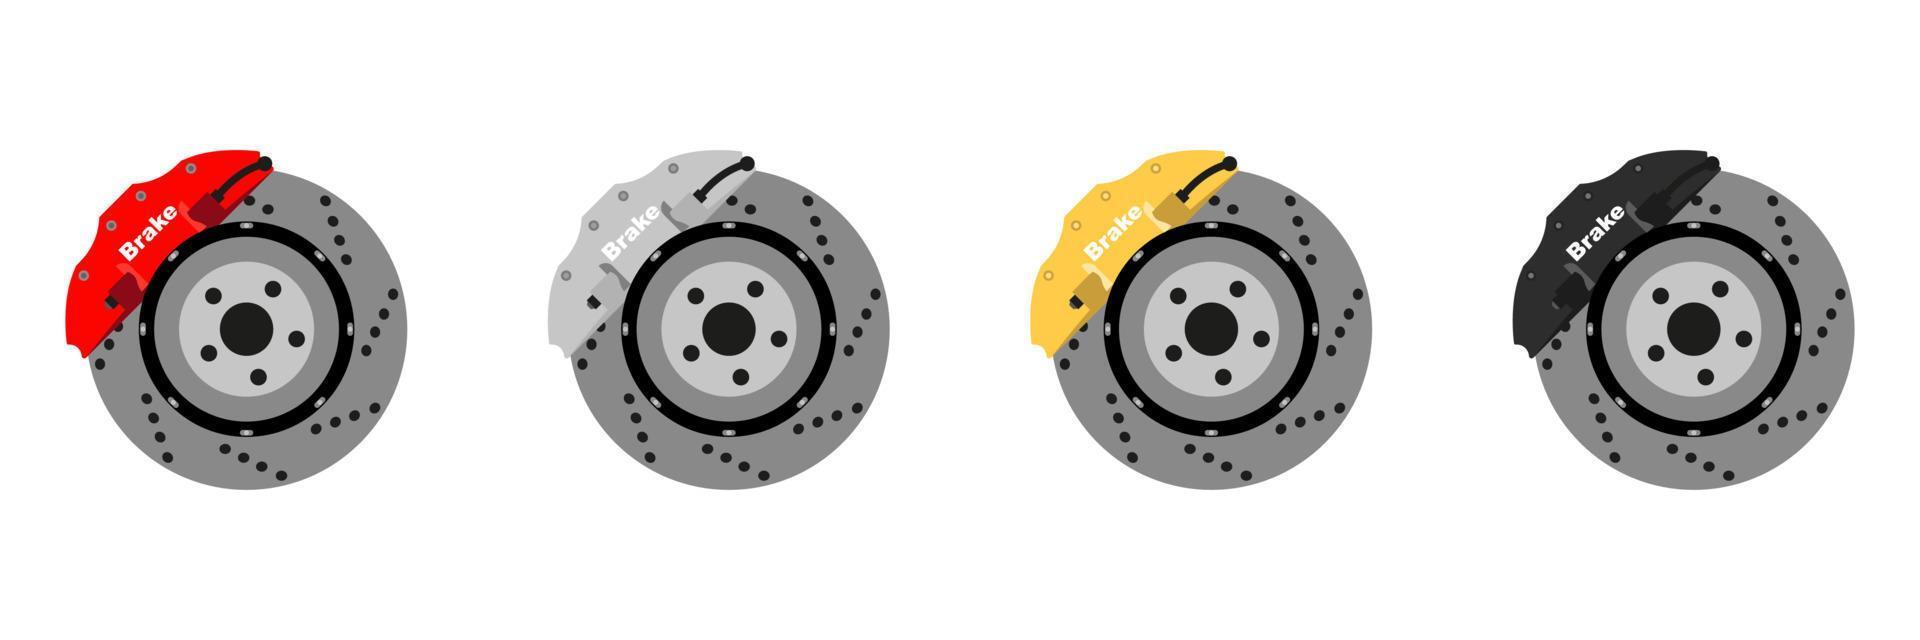 Set of Disk Brake rotor. Car parts illustration in flat desig vector